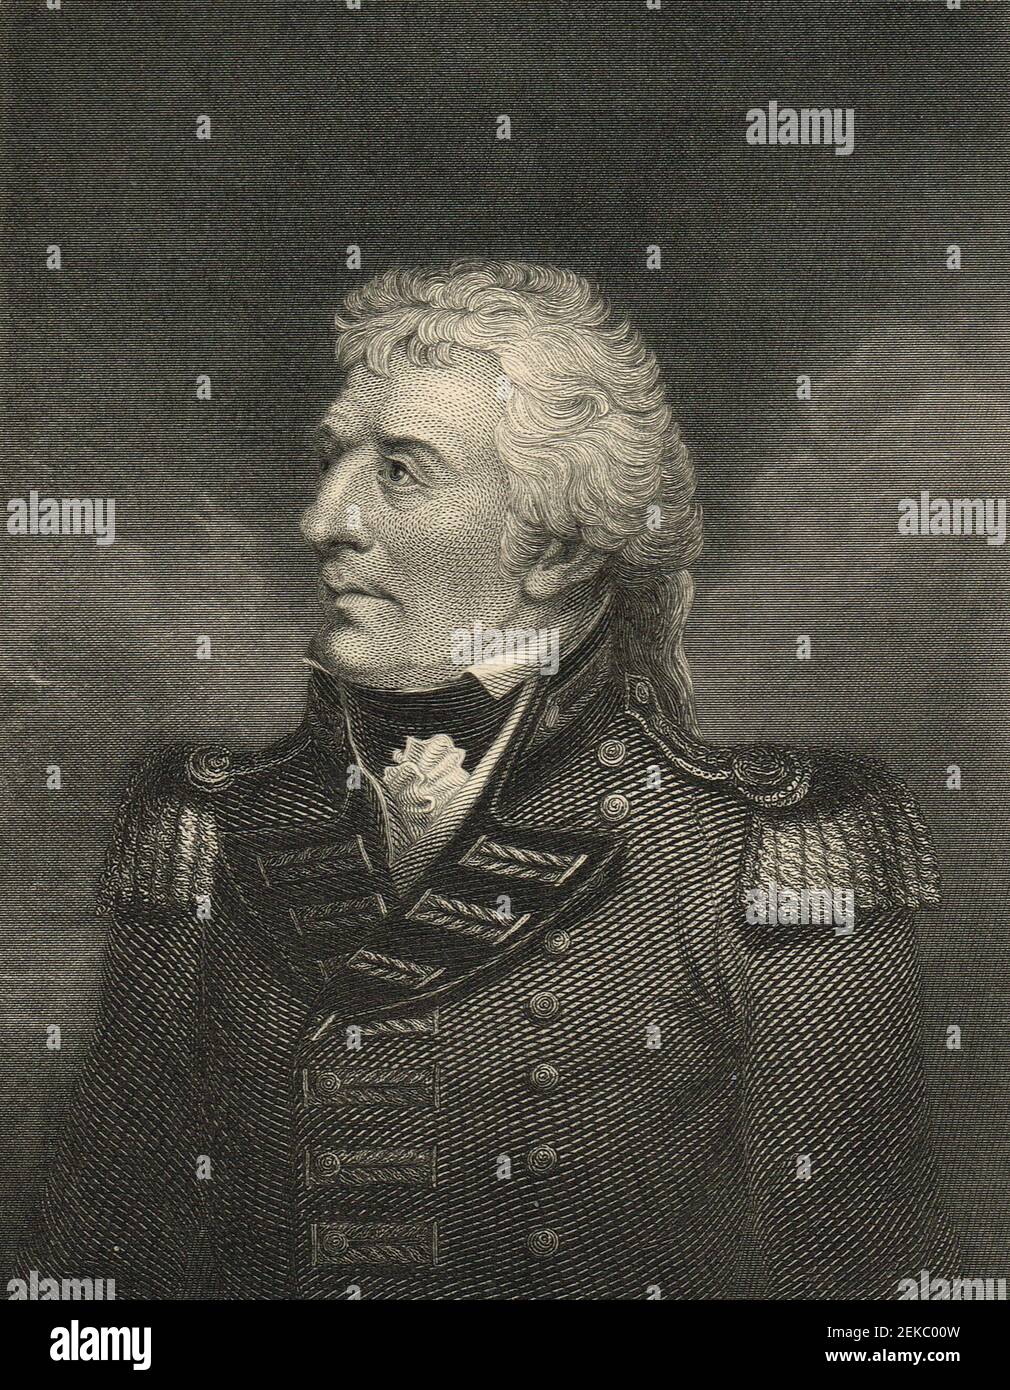 Gerard Lake, 1er Viscount Lake, (27 juillet 1744 – 20 février 1808), était un général britannique. Il commanda les forces britanniques pendant la rébellion irlandaise de 1798, et servit plus tard comme commandant en chef de l'armée en Inde britannique. Banque D'Images